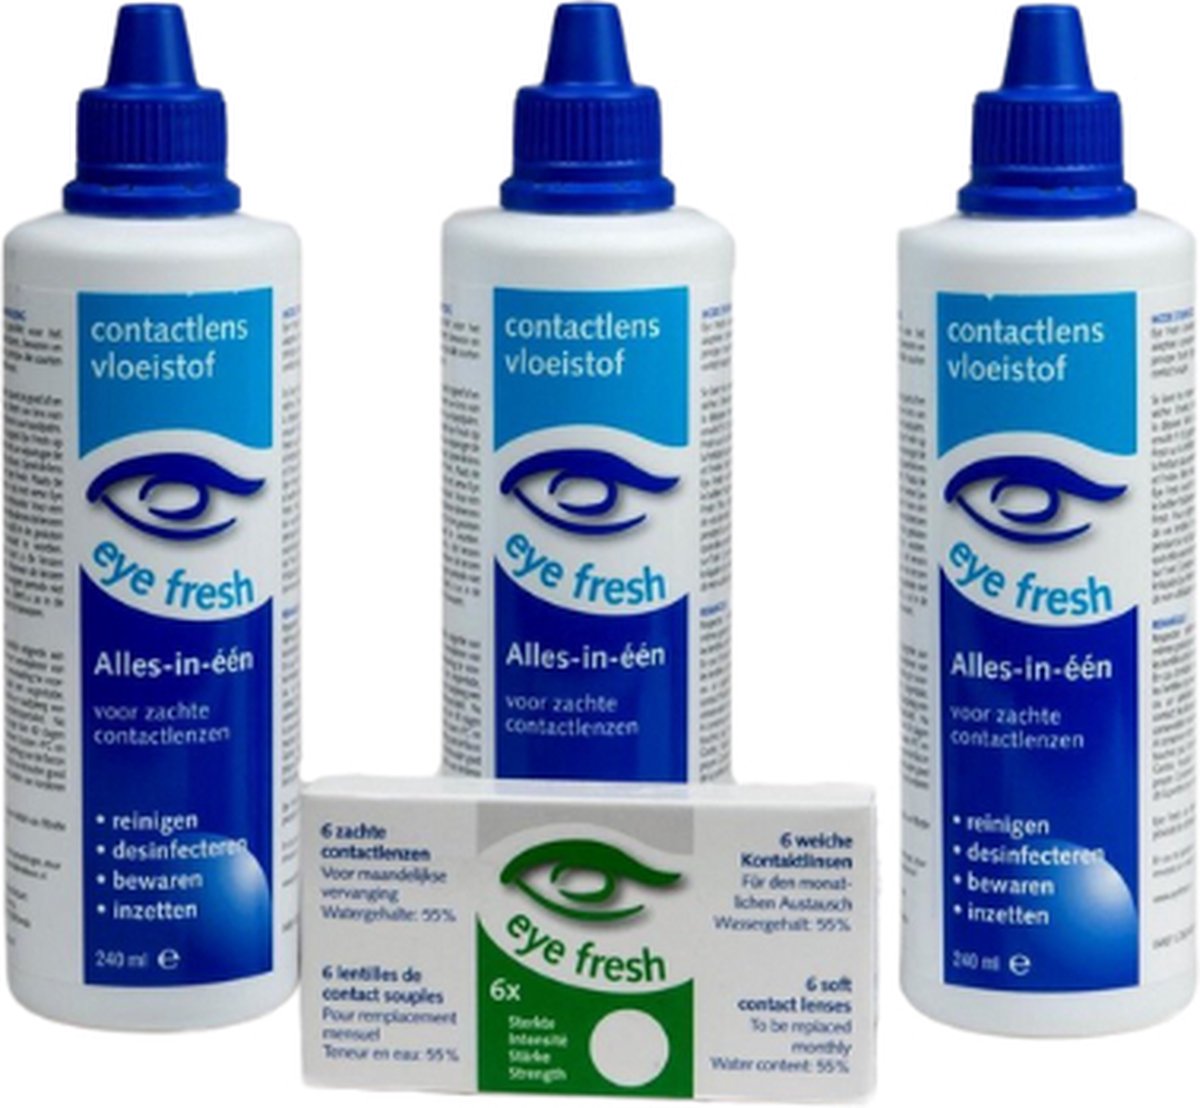 Eye Fresh 3 maanden pakket -2,00 - 6 maandlenzen + 3 flessen lenzenvloeistof - voordeelverpakking